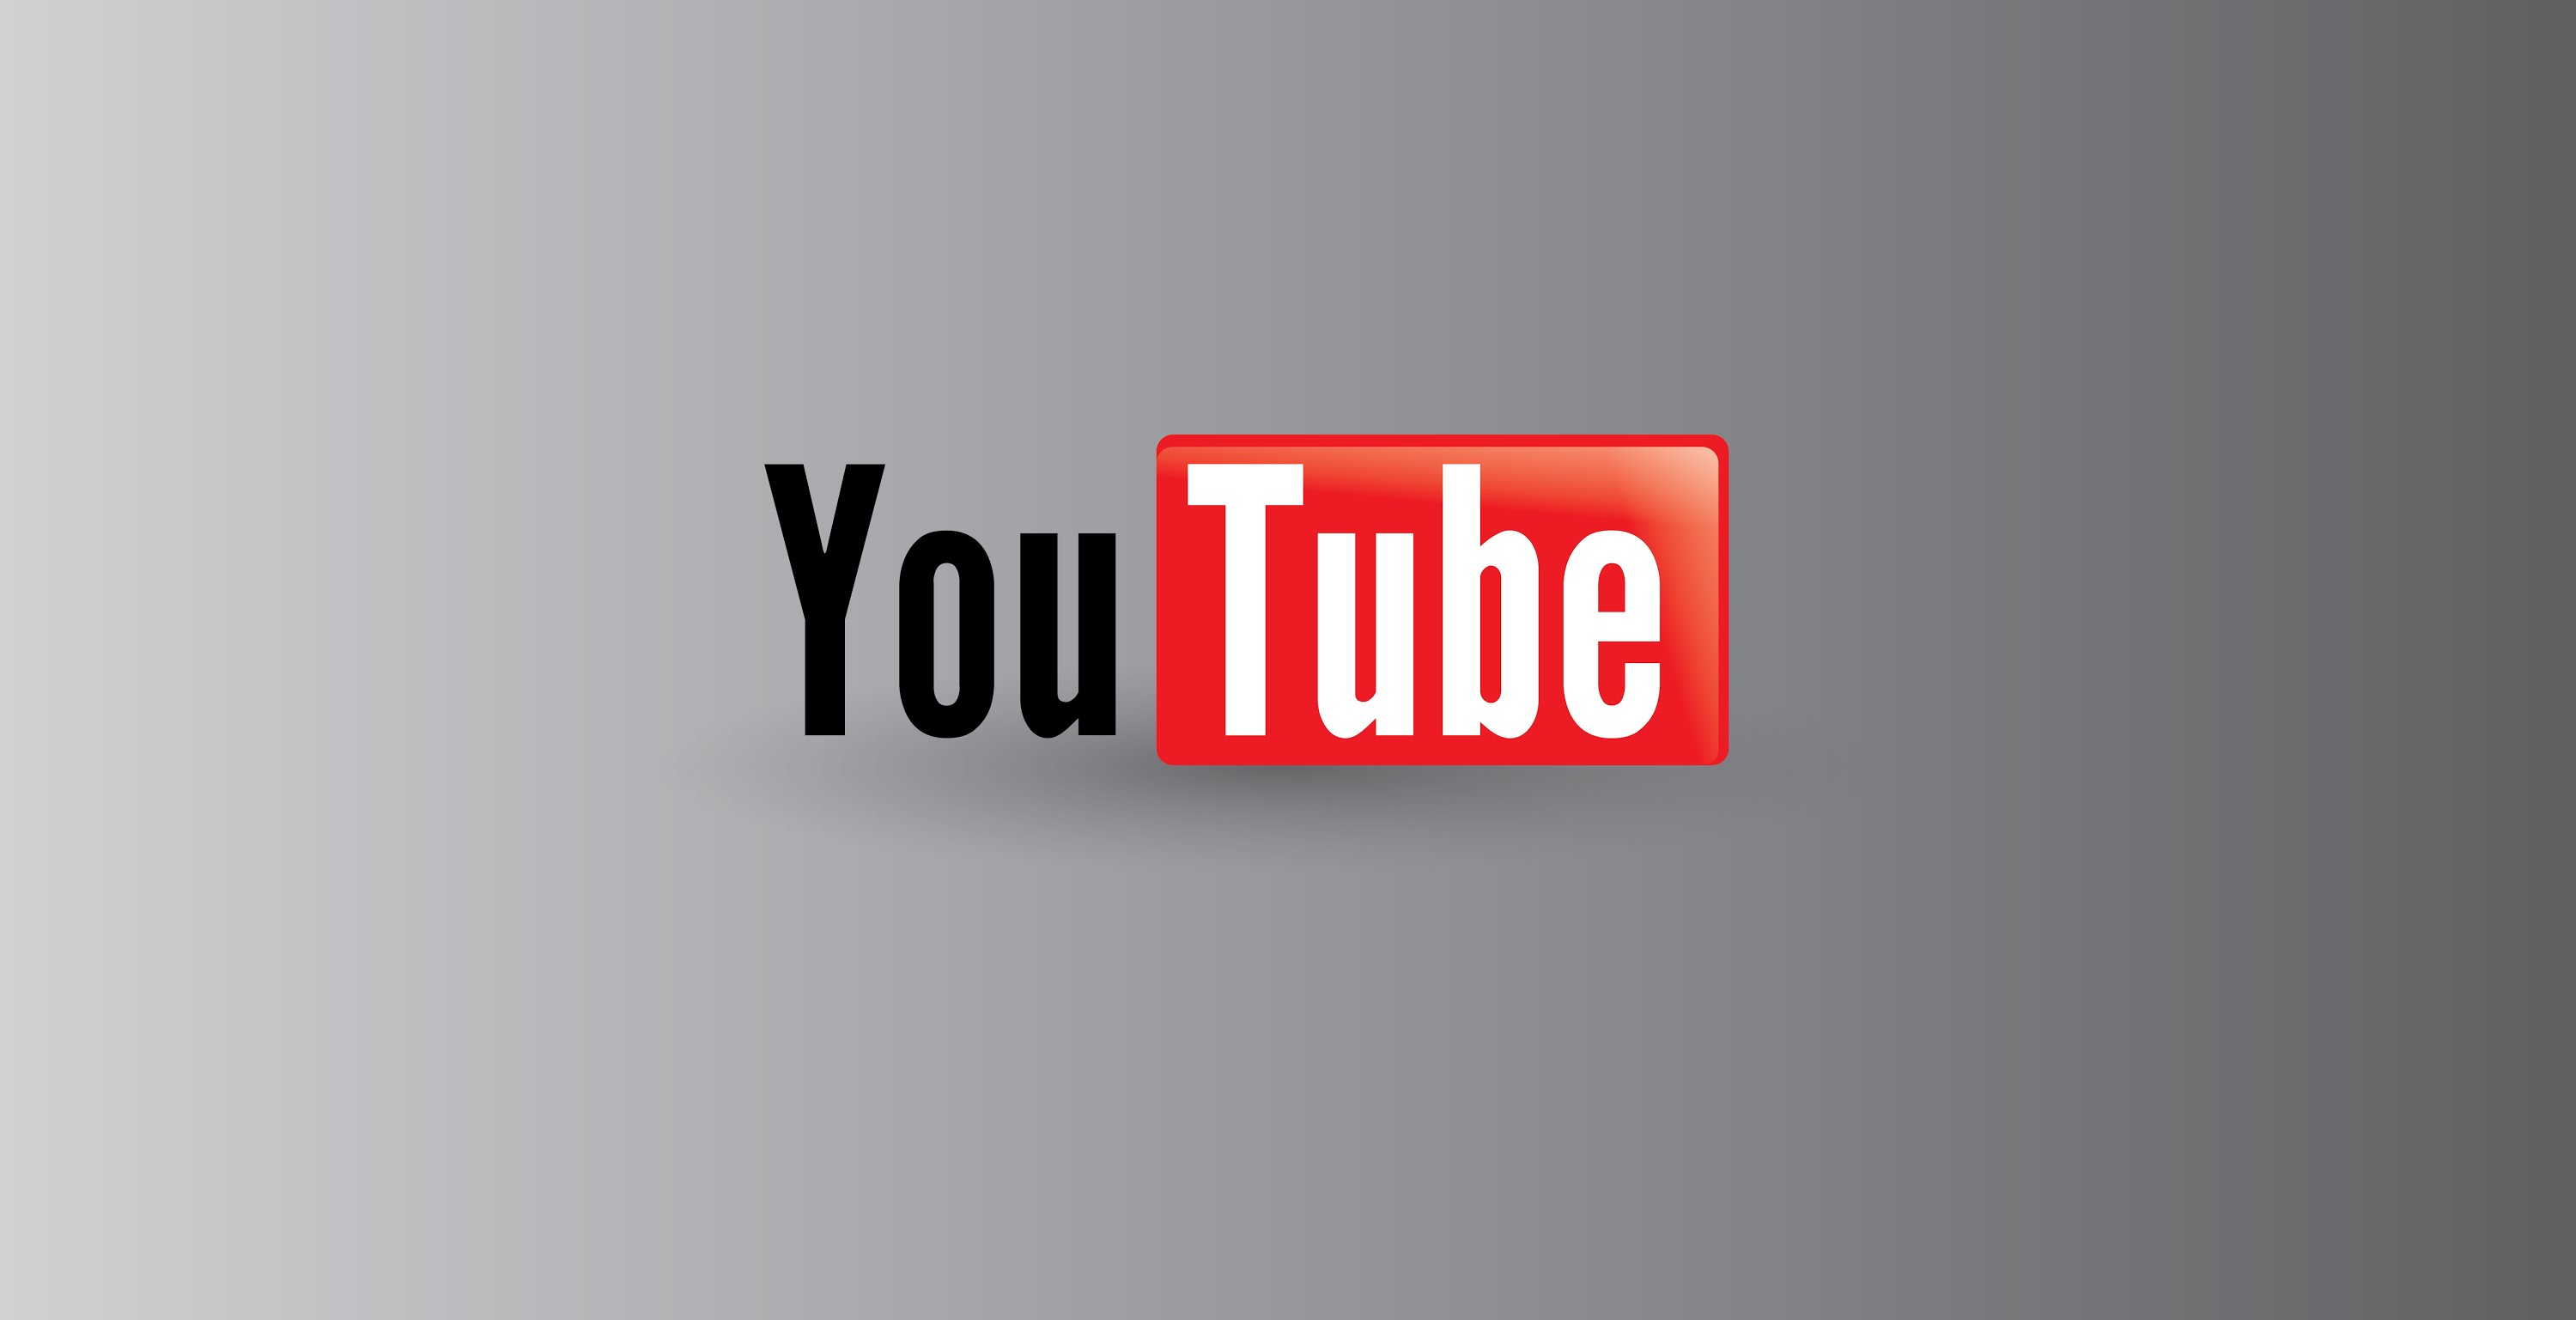 Надпись shorted. Логотип ютуб. Youtube фото. Изображение youtube. Изображение для канала.